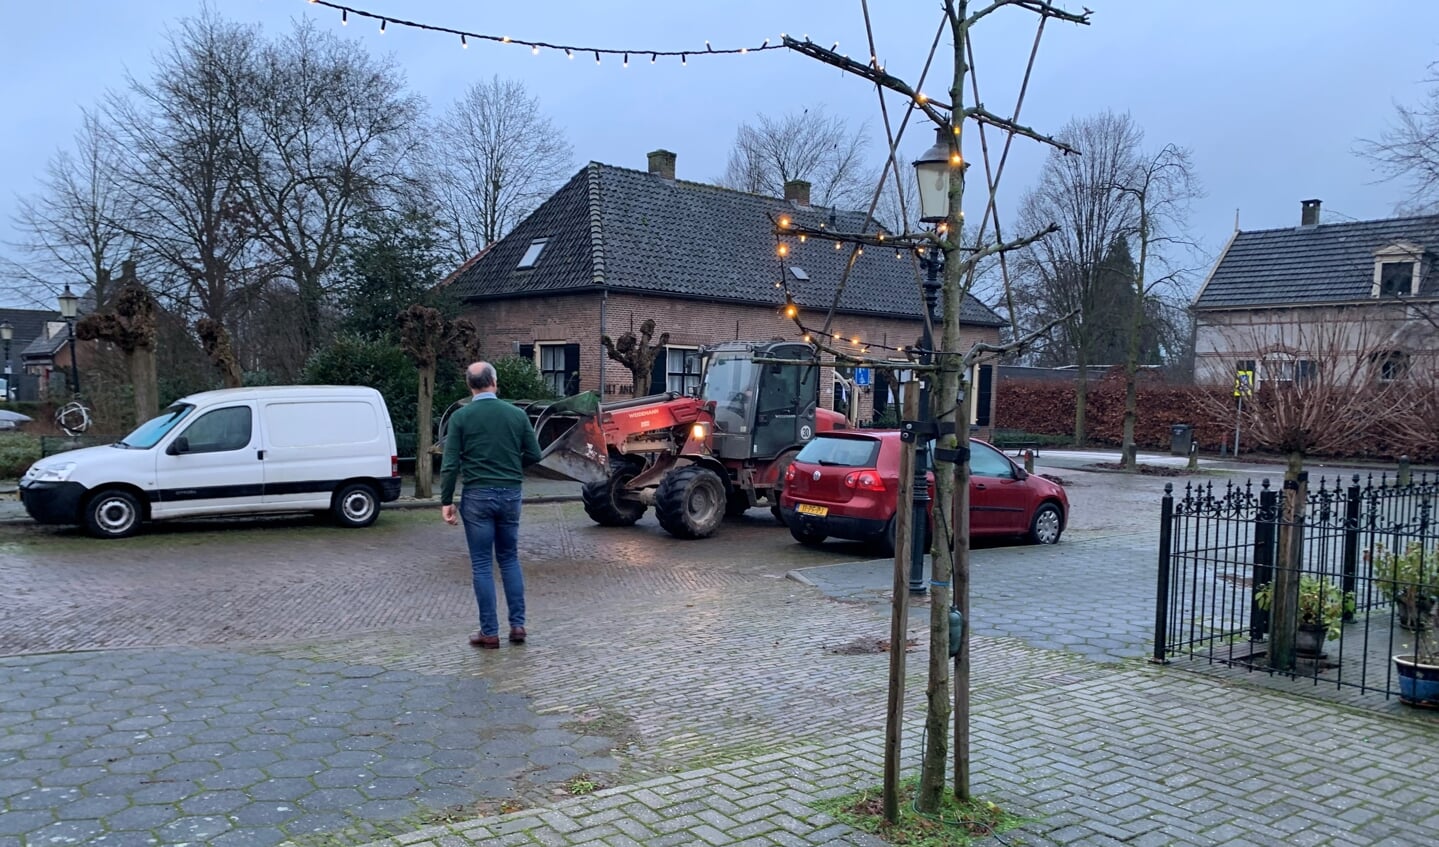 Dierenarts Arjan den Hertog heeft het druk tijdens de drive-through voor de dierenartsenpraktijk in Steenderen. Foto: Maike van der Geest